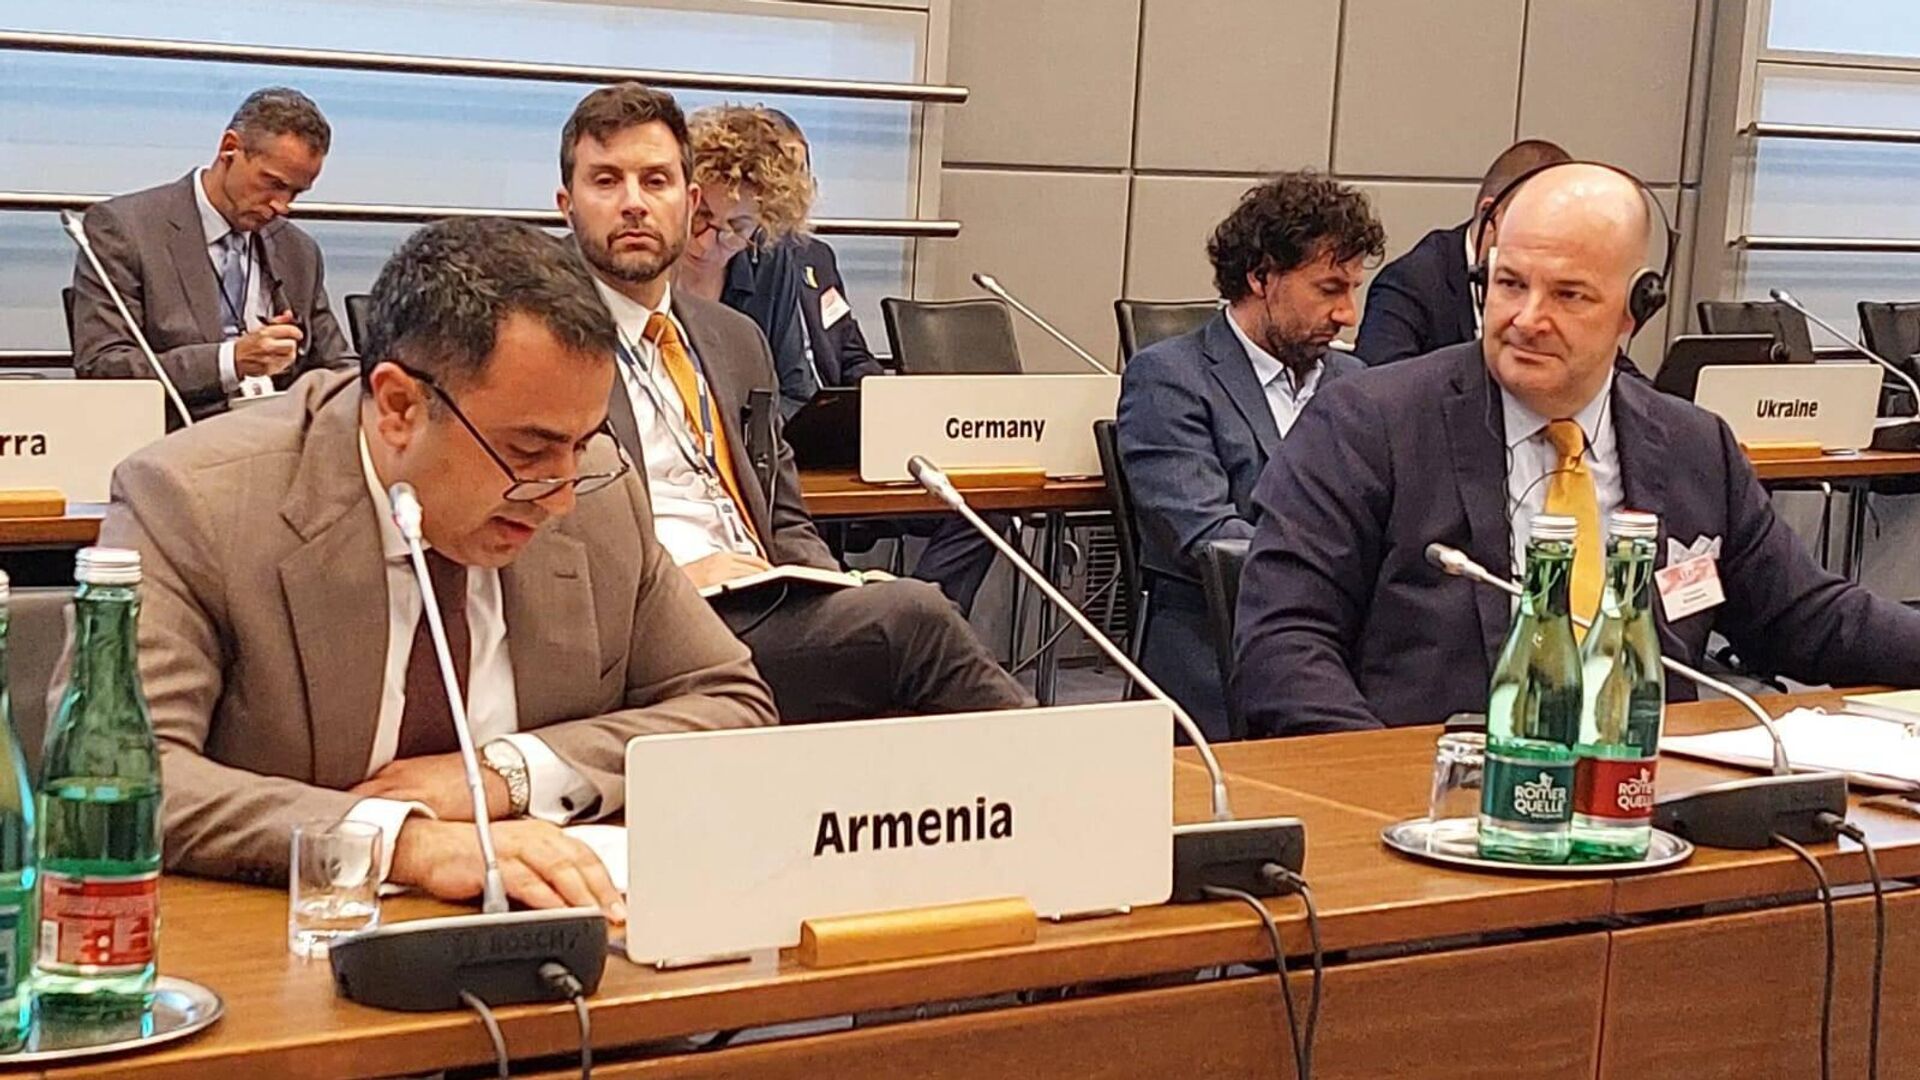 Заместитель министра иностранных дел Армении поставил под вопрос способность ОБСЕ обеспечить всеобъемлющую безопасность в регионе своей ответственности 